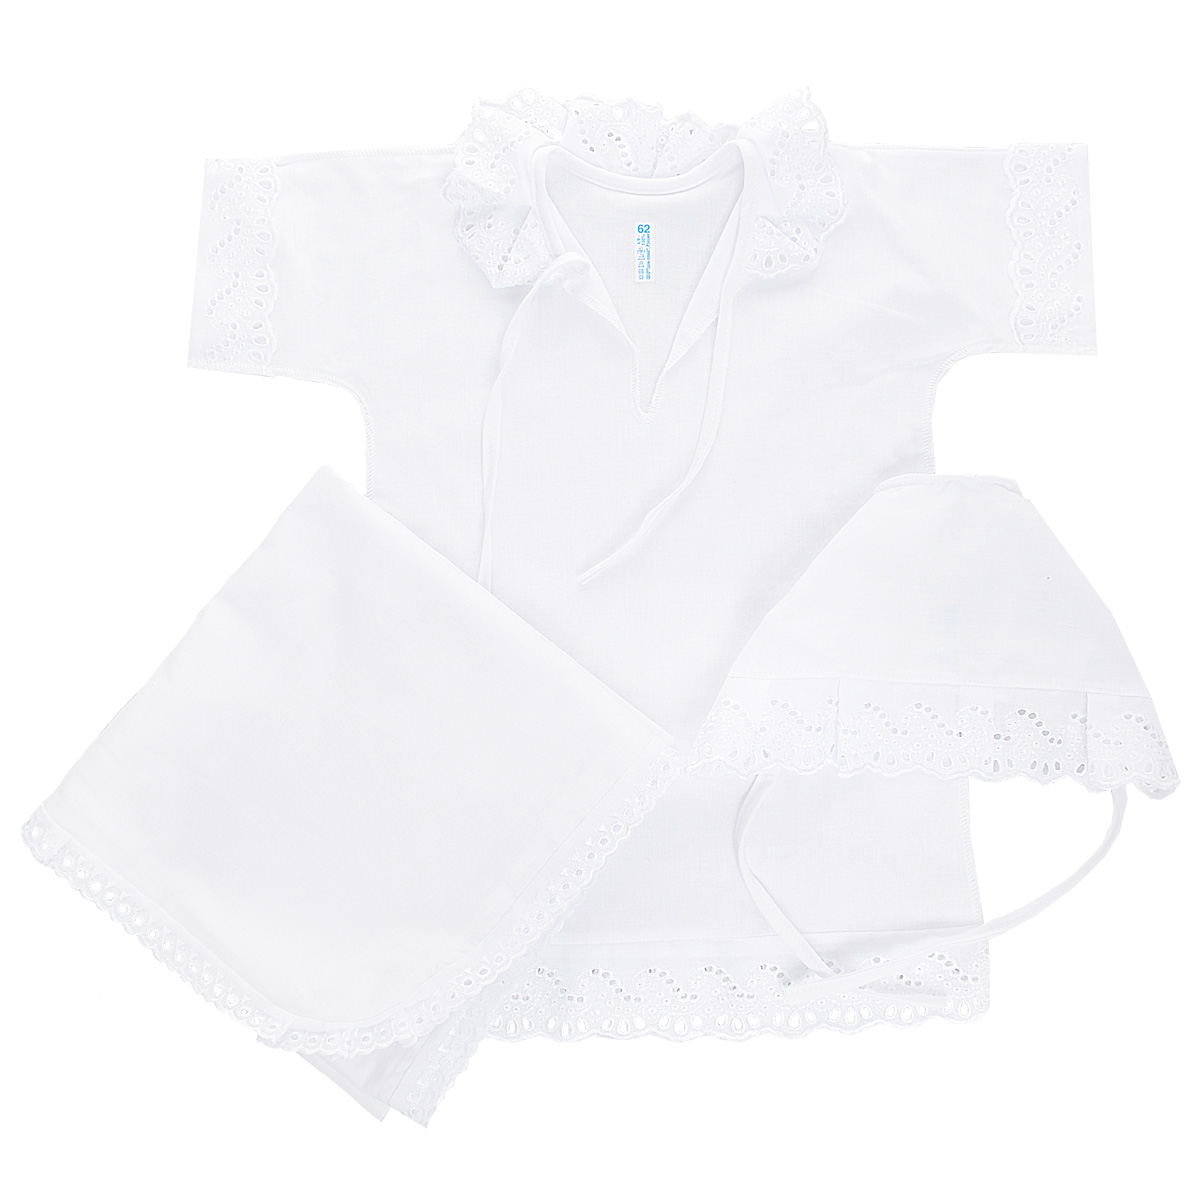 Комплект для крещения детский Трон-плюс: рубашка, чепчик, пеленка, цвет: белый. 1417. Размер 62, 3 месяца